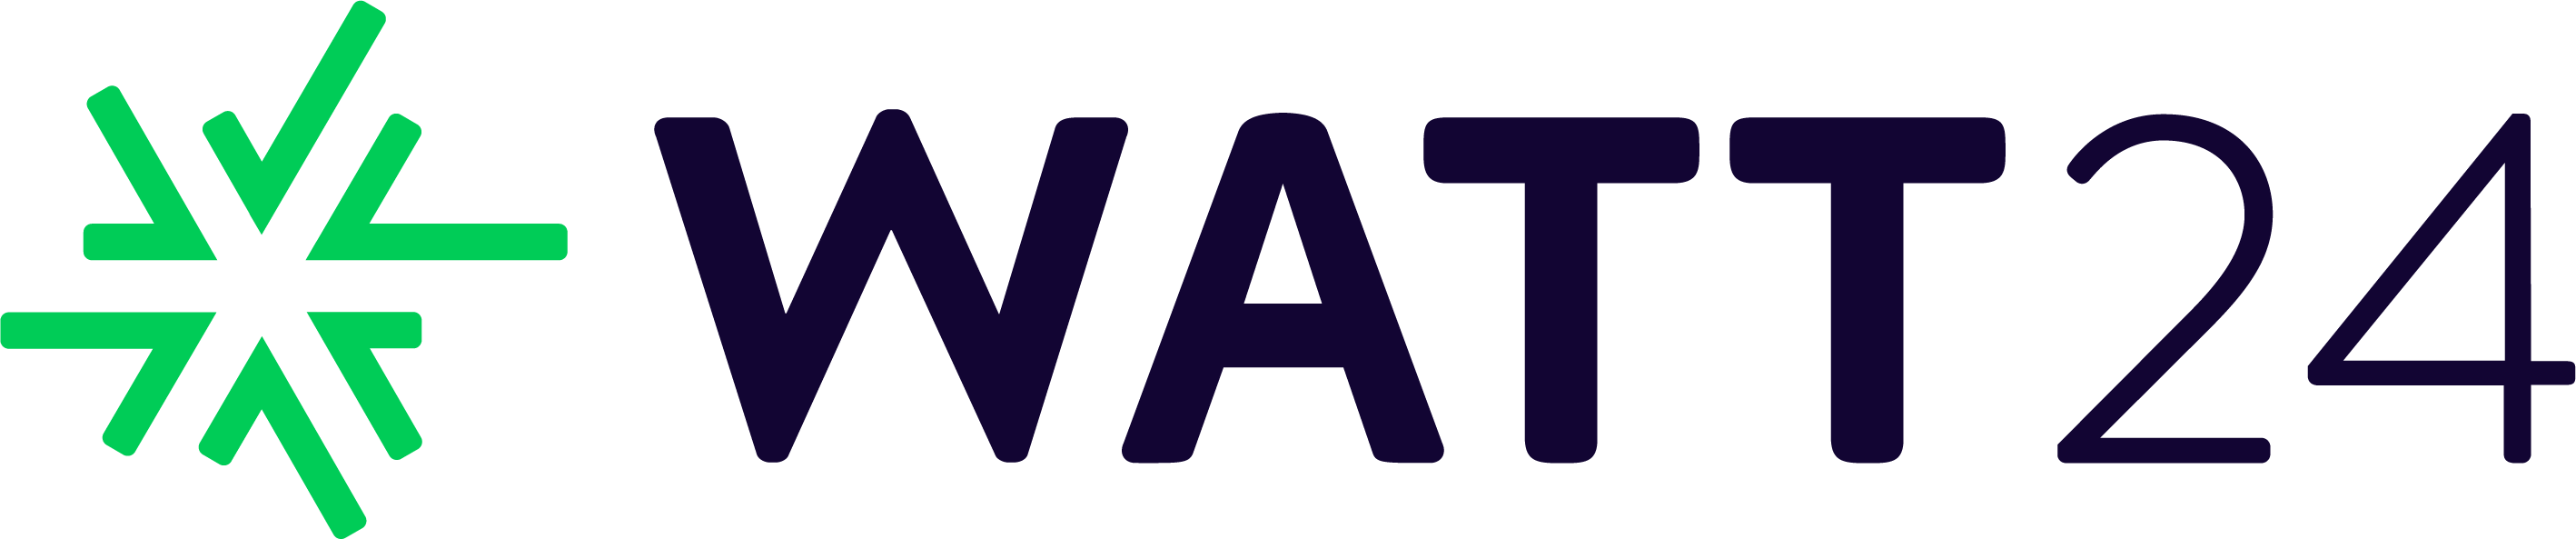 Logo WATT24